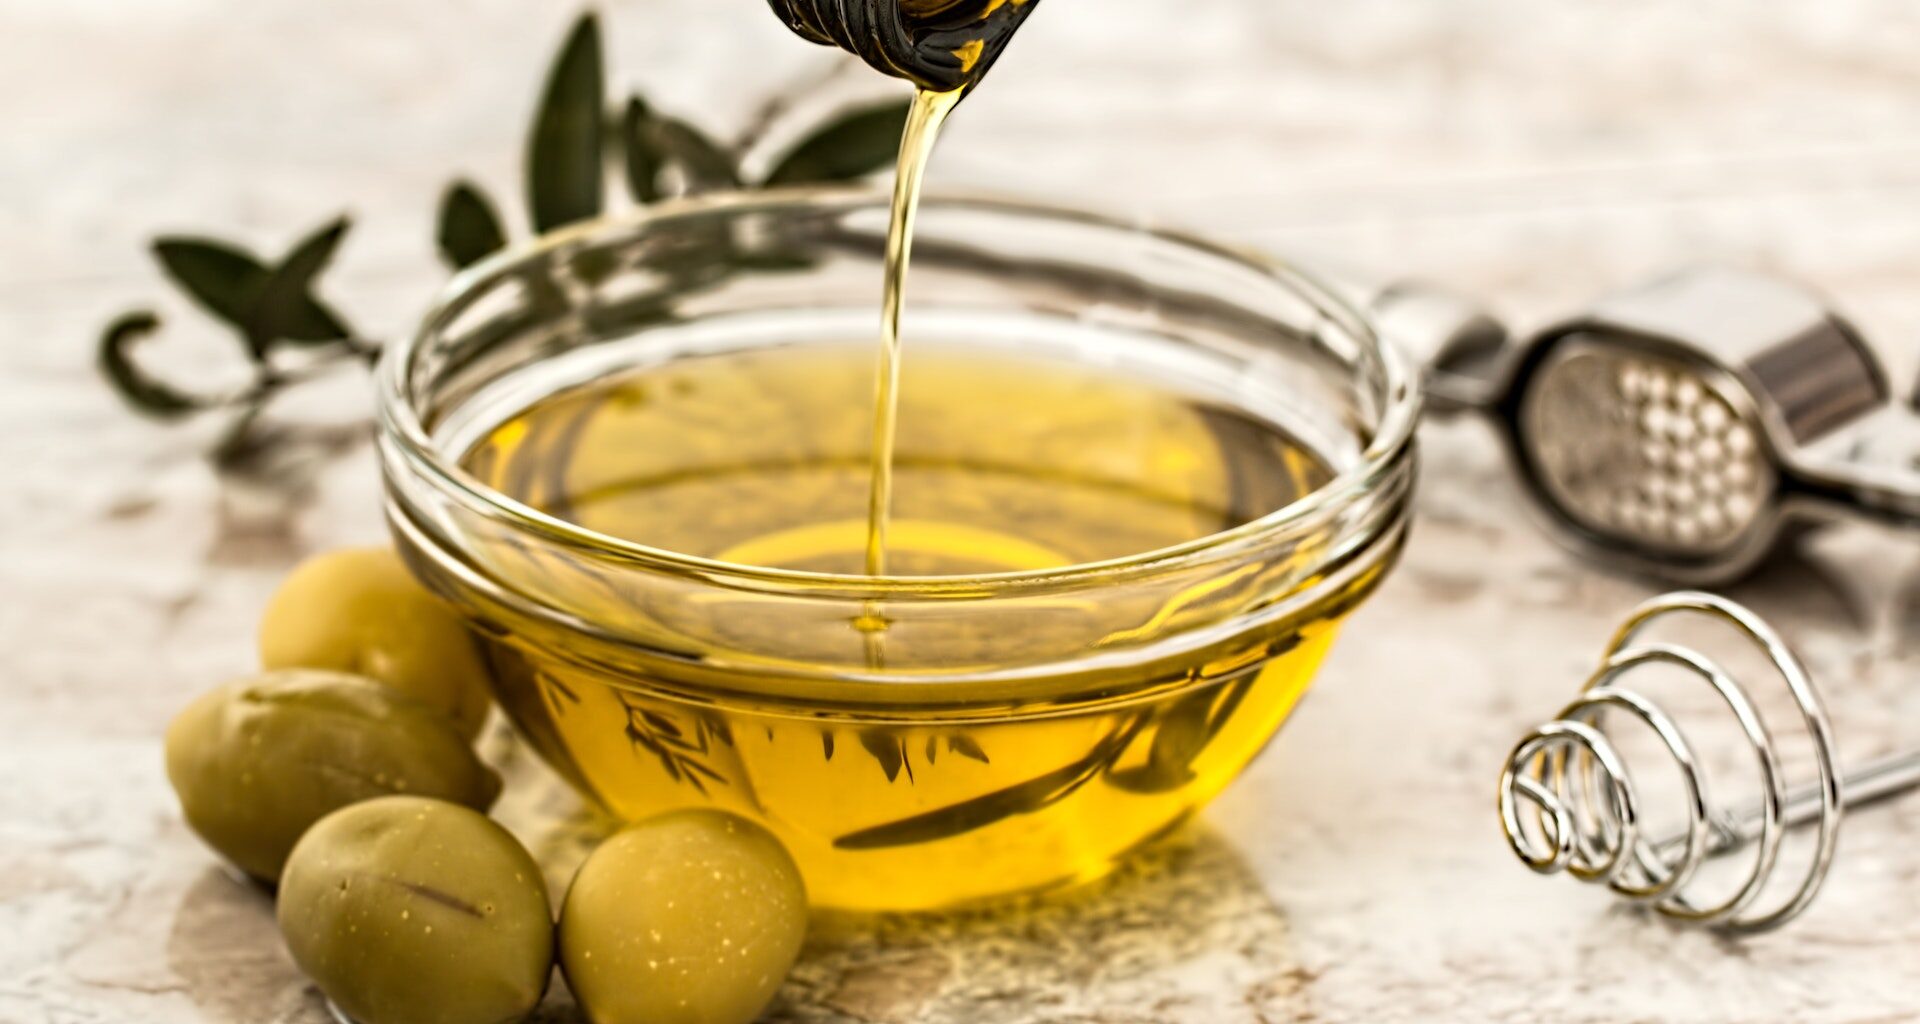 oliwa z oliwek nalewana do miseczki